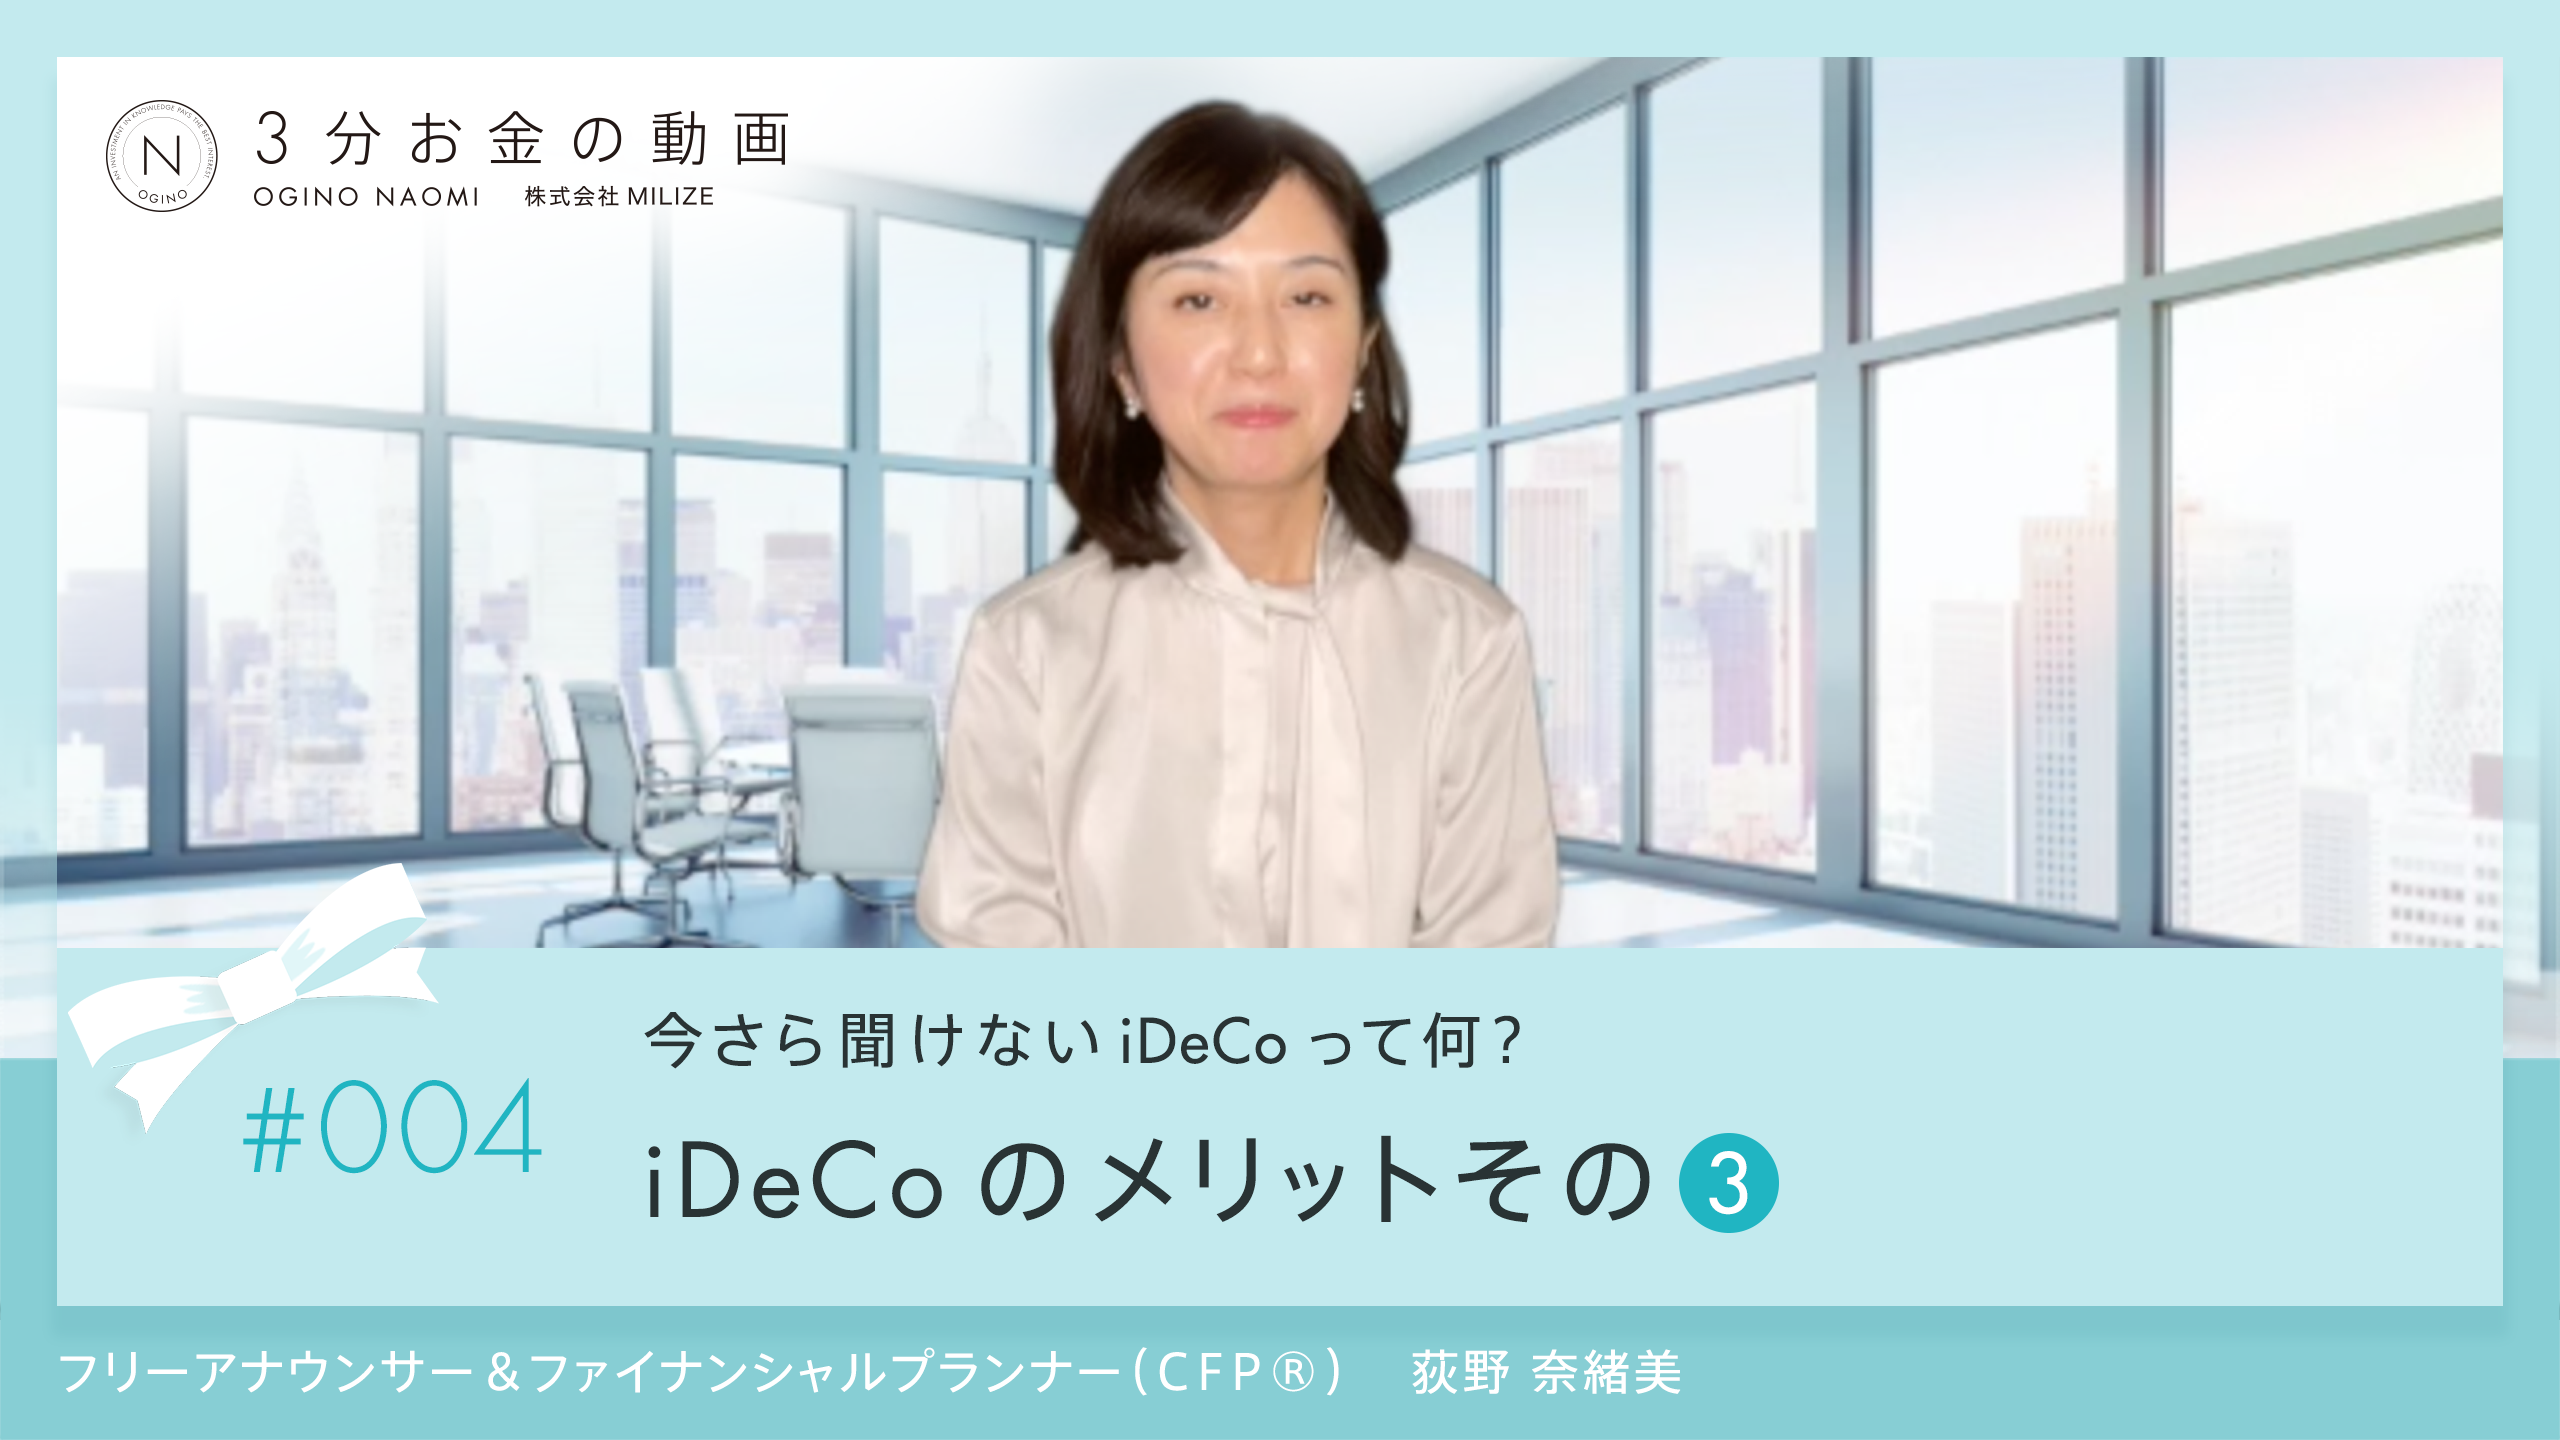 第4回3分お金の動画 iDeco 受取時の控除について<br>〜iDeCoのメリットその３〜